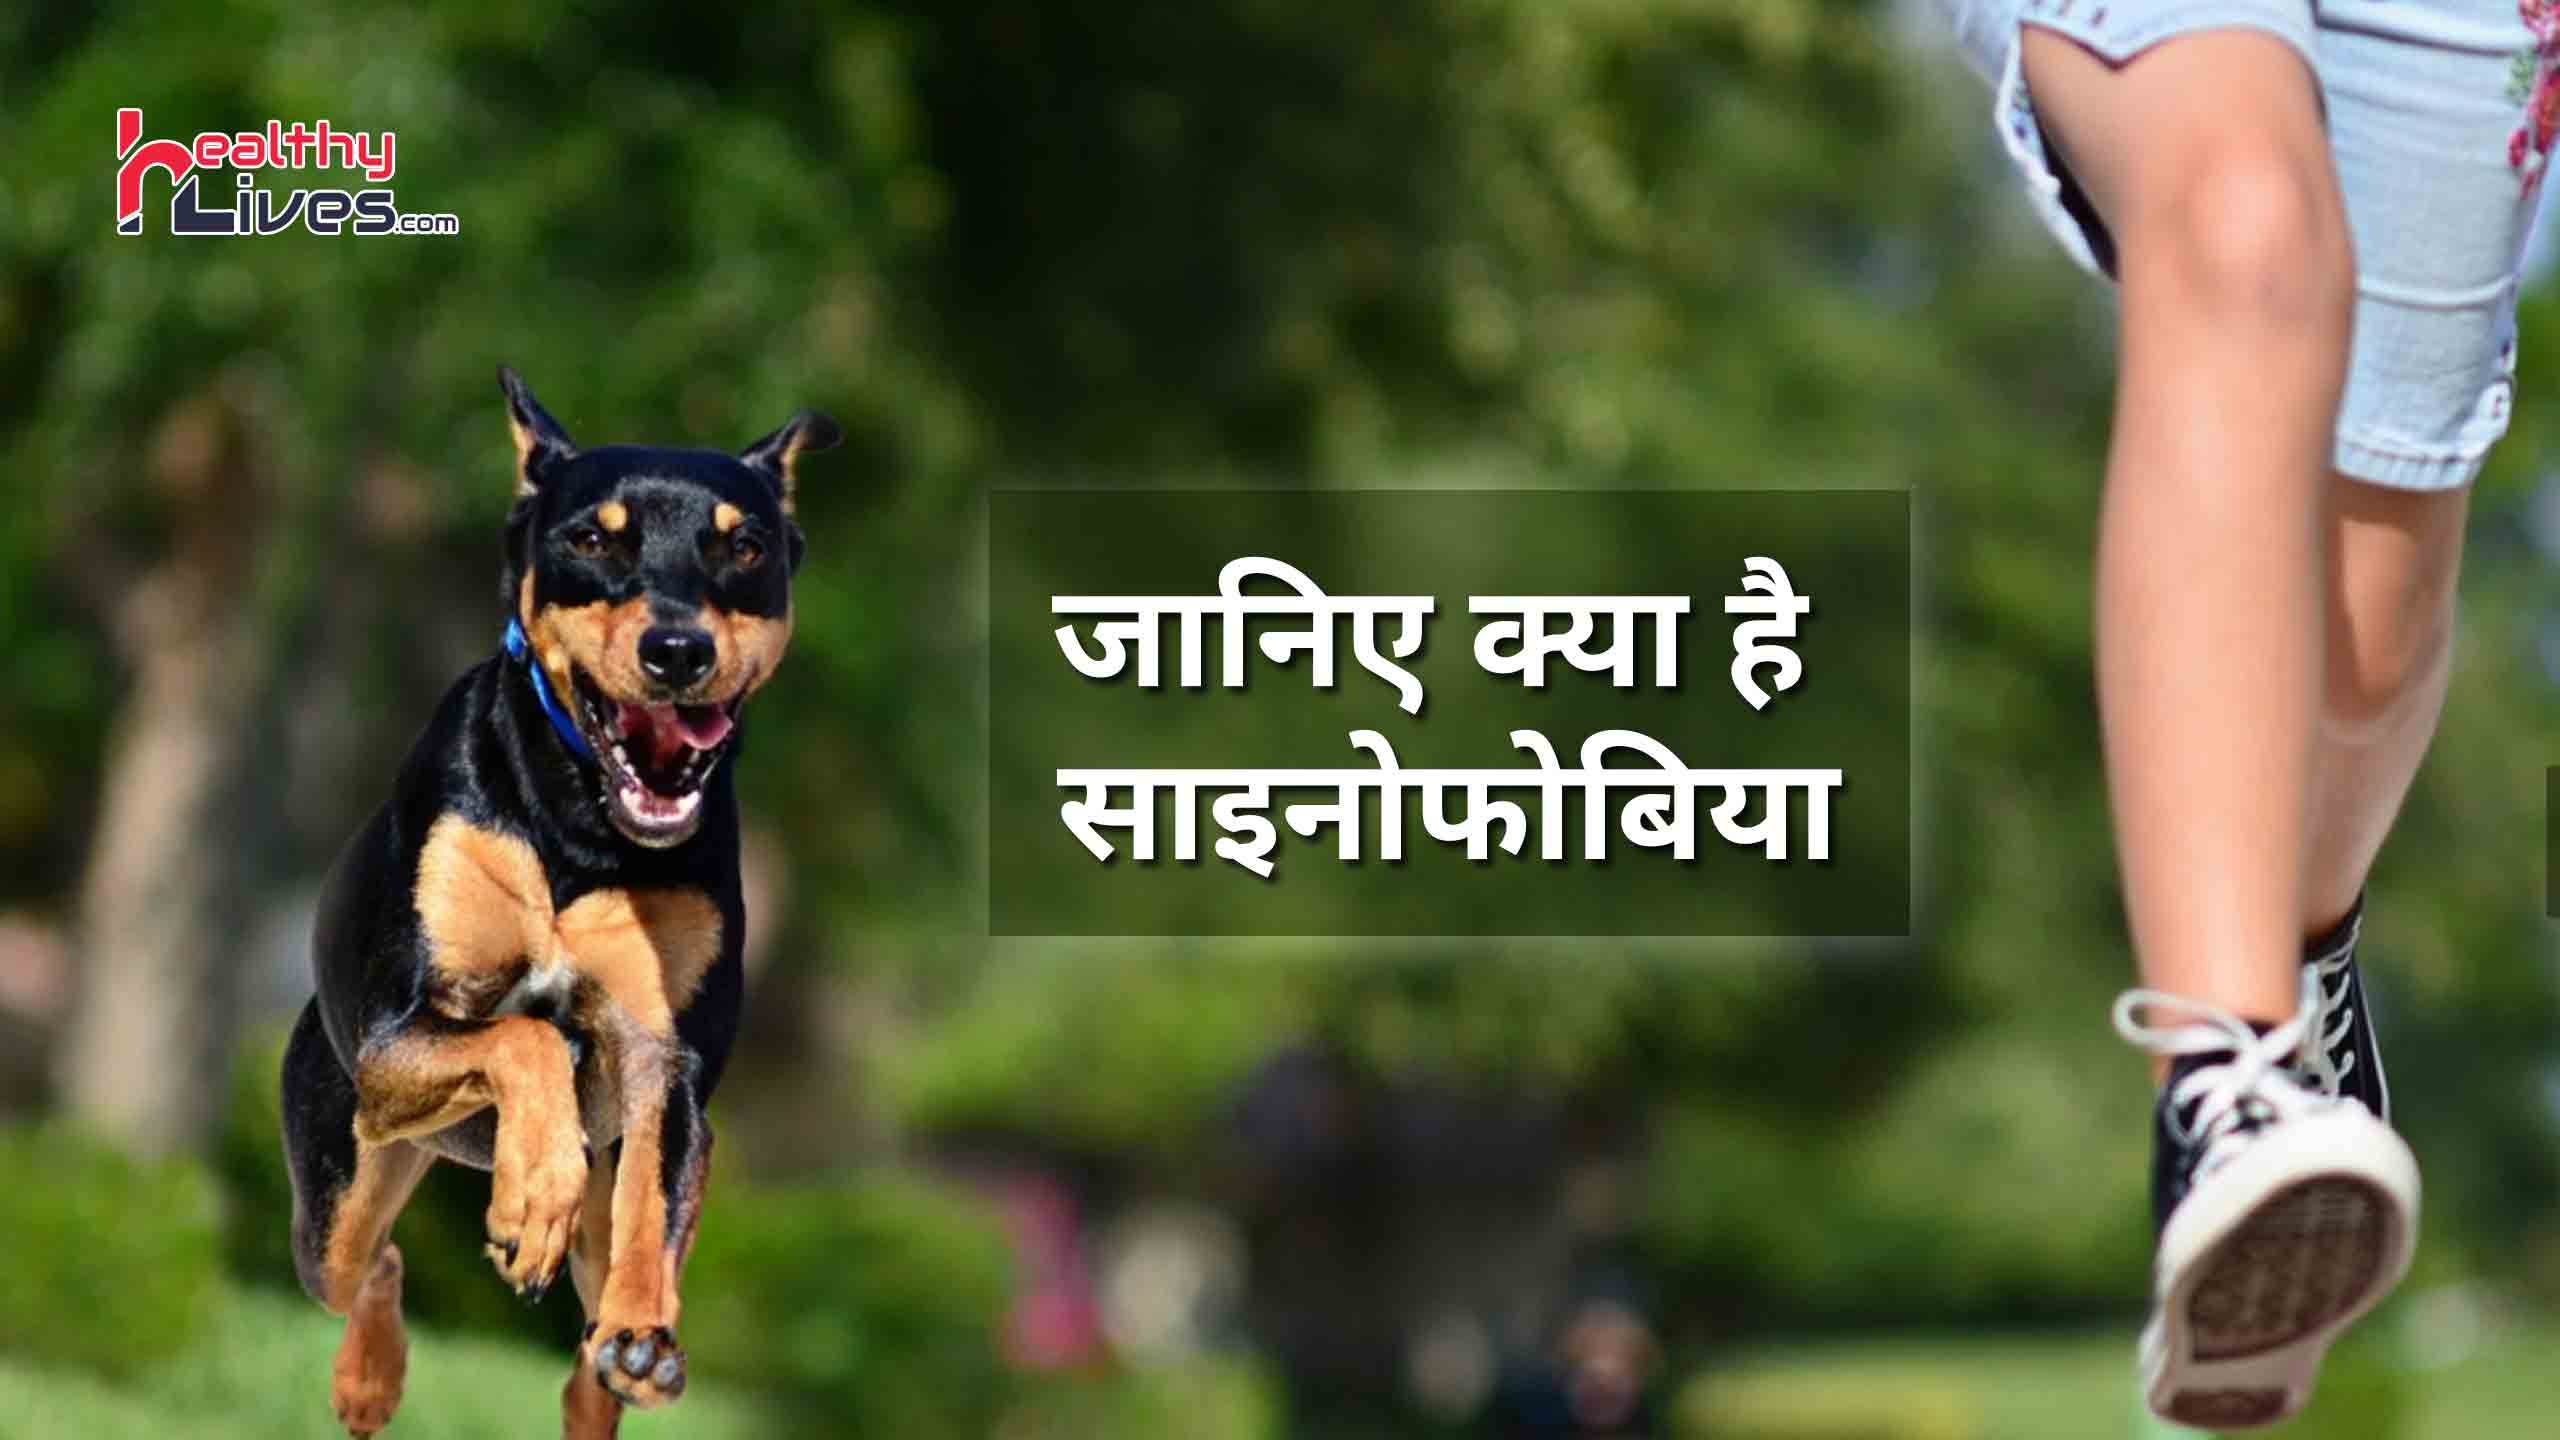 Cynophobia in Hindi: कुत्तों से खौफ की बीमारी साइनोफोबिया से कैसे पायें निजात